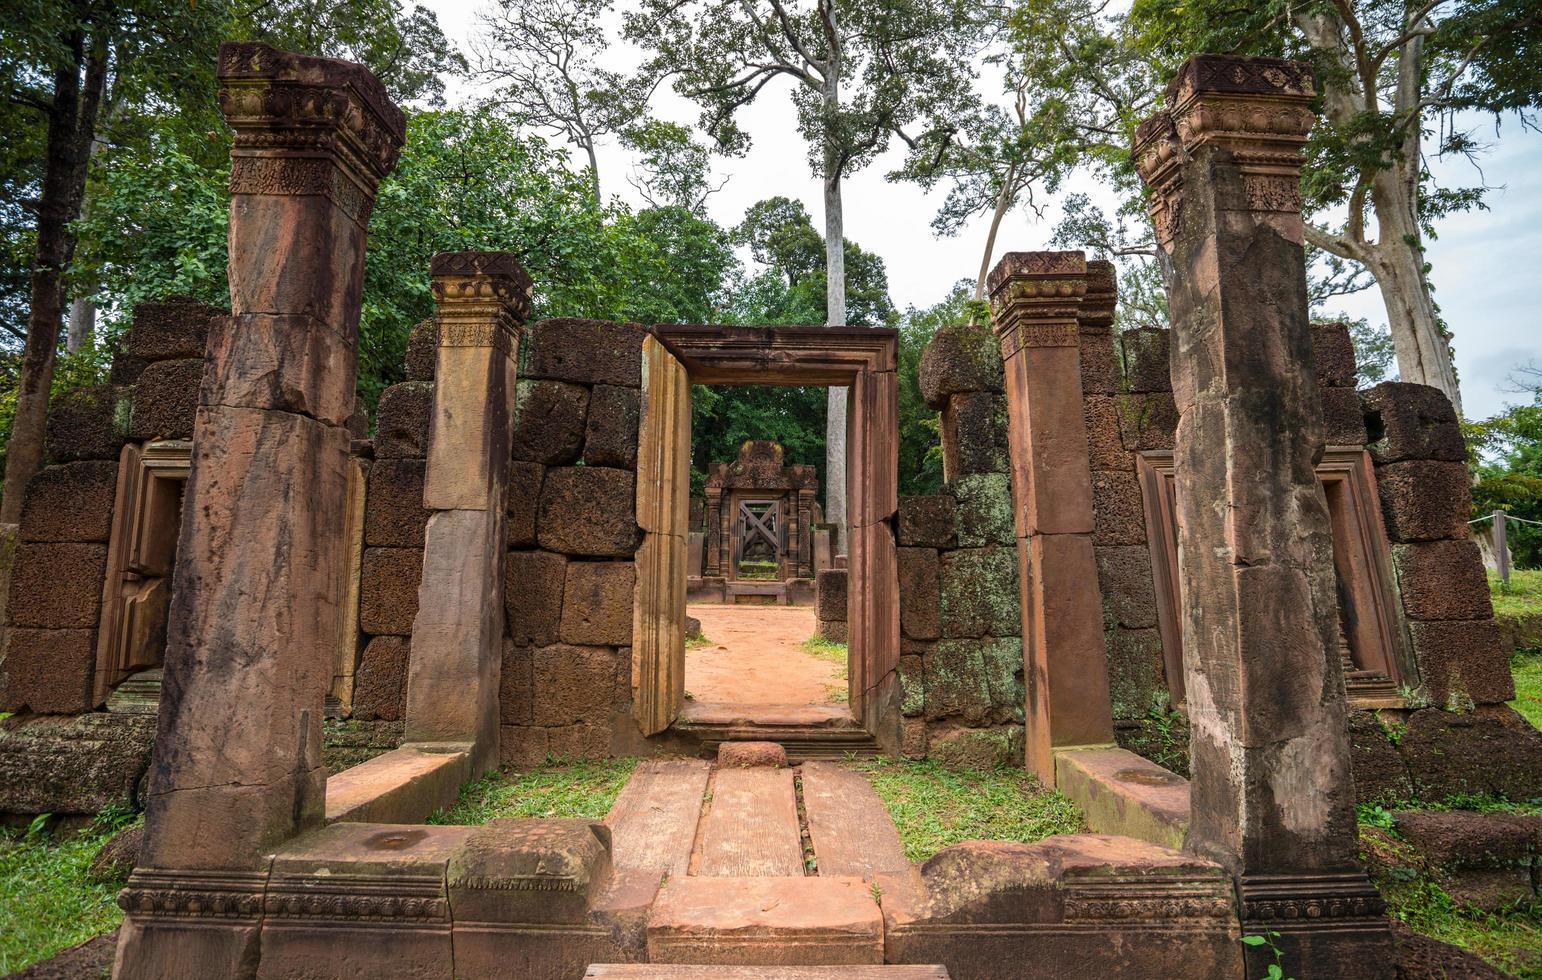 le antiche rovine del tempio di Banteay srei il tempio in arenaria rosa di Siem Reap, in Cambogia. foto